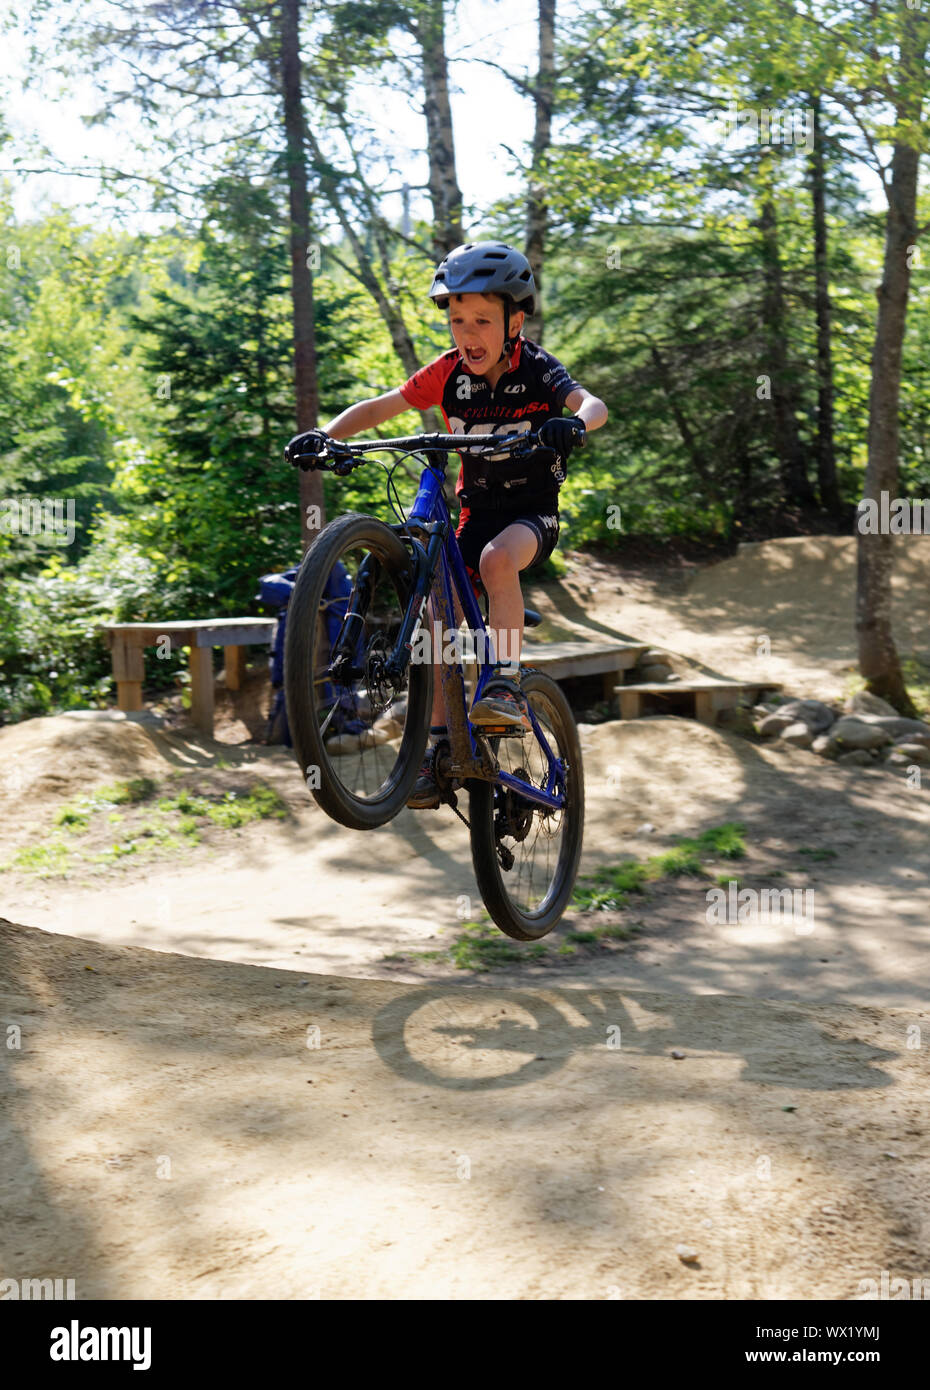 Un garçon de sept ans faire saute sur son vélo de montagne - son visage montrant la concentration et l'effort Banque D'Images